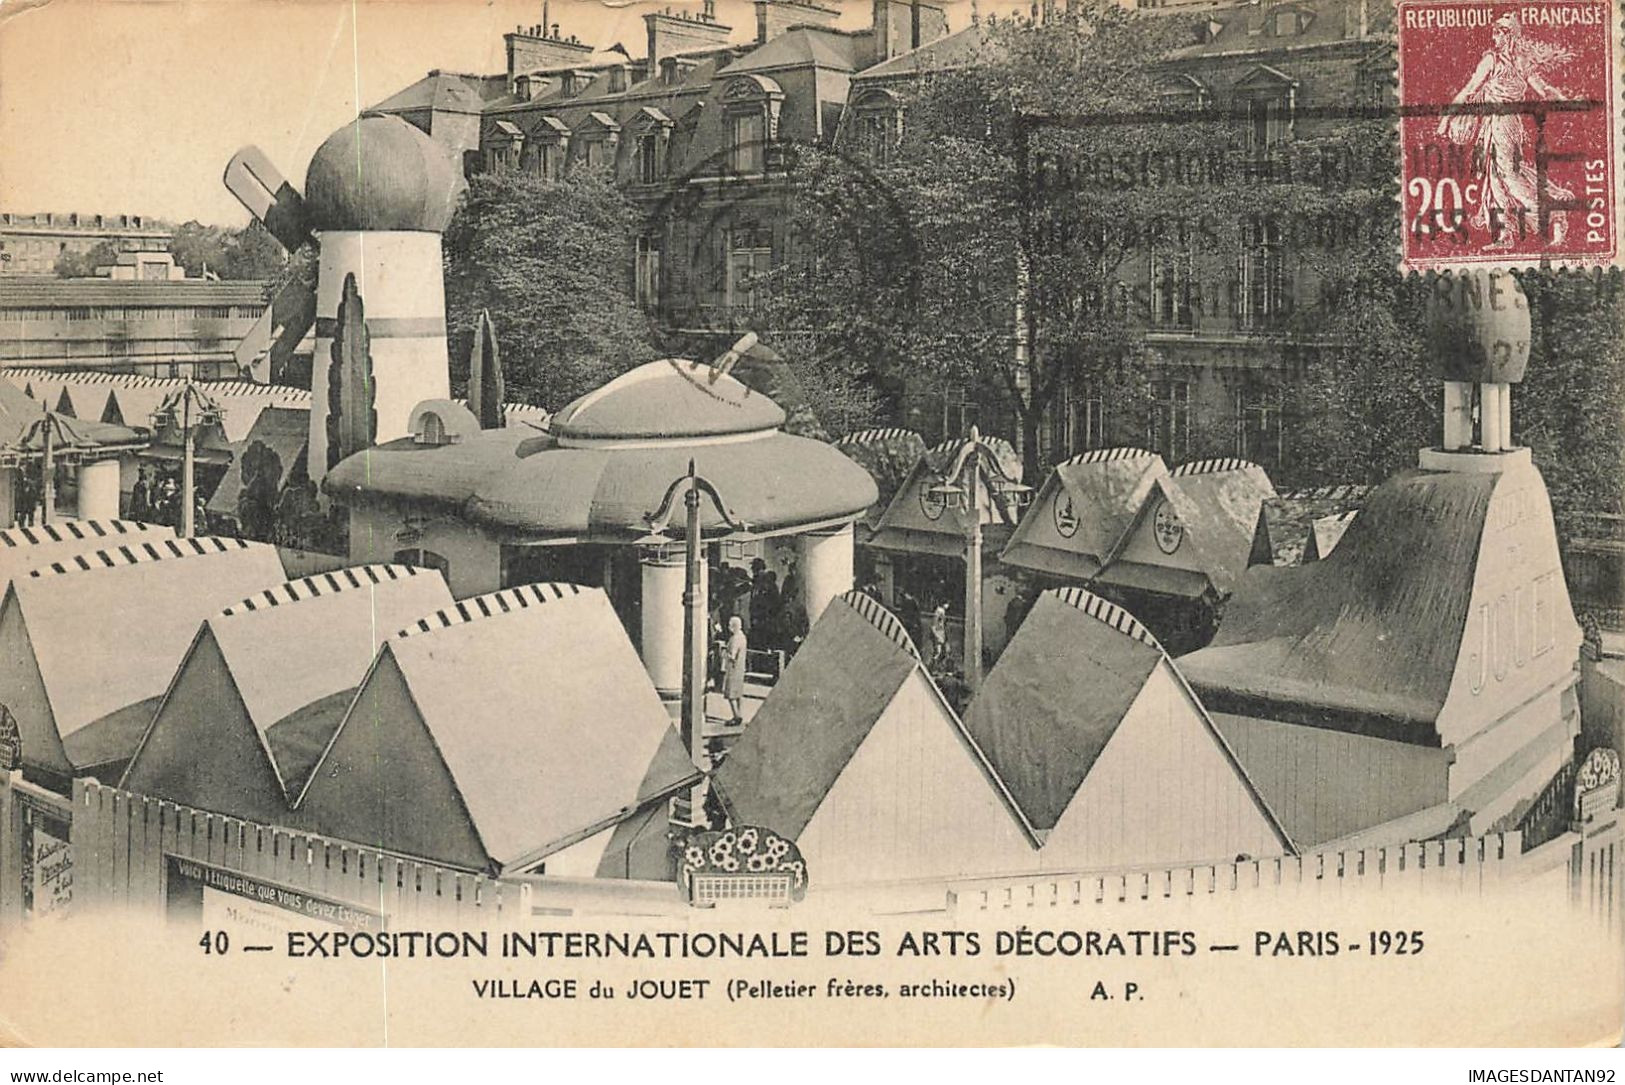 75 PARIS #22811 EXPOSITION INTERNATIONALE DES ARTS DECORATIFS 1925 VILLAGE DU JOUET - Exhibitions